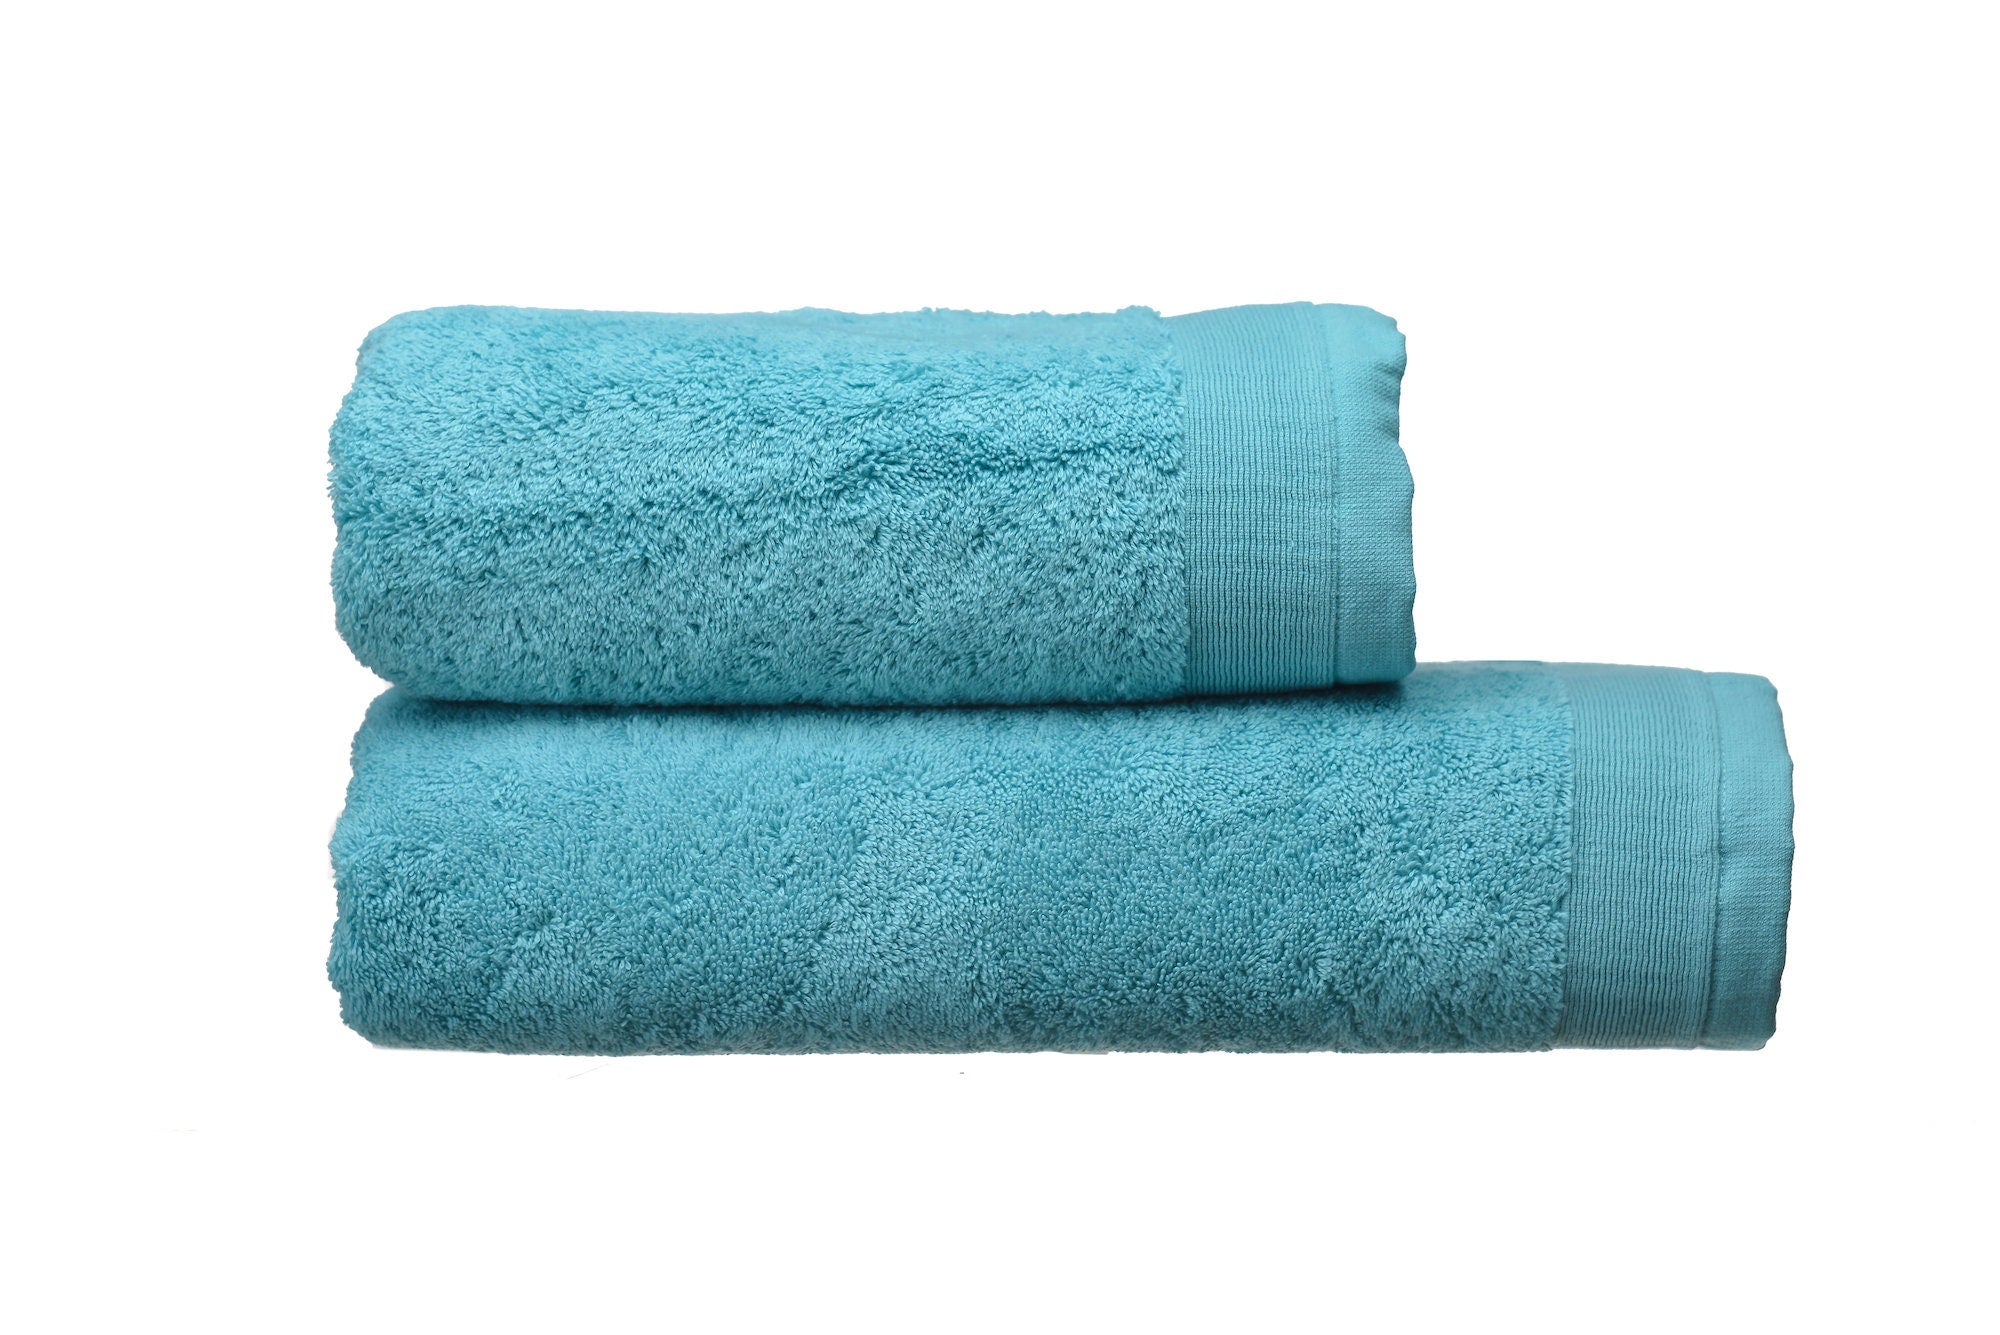 Bath Towel Set 600 grm, 2 Pieces Set: Bath and Face Towel, 100% Natural Terry Cotton, Soft Touch, Super Absorbent